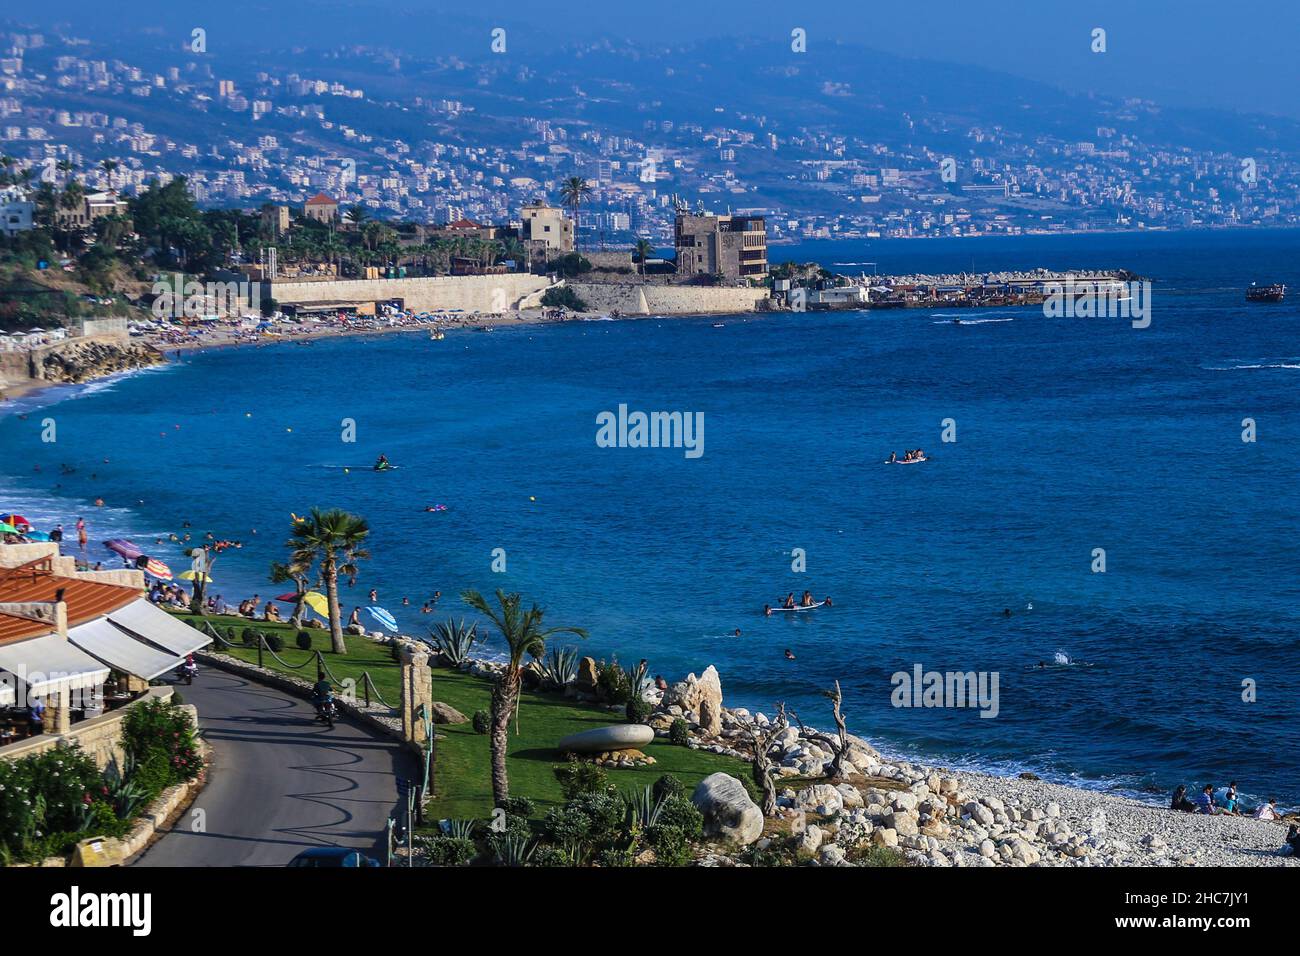 Vista panorámica de un paisaje marino desde el casco antiguo de la ciudad de Byblos con palmeras y construcciones en la ladera de la montaña Foto de stock